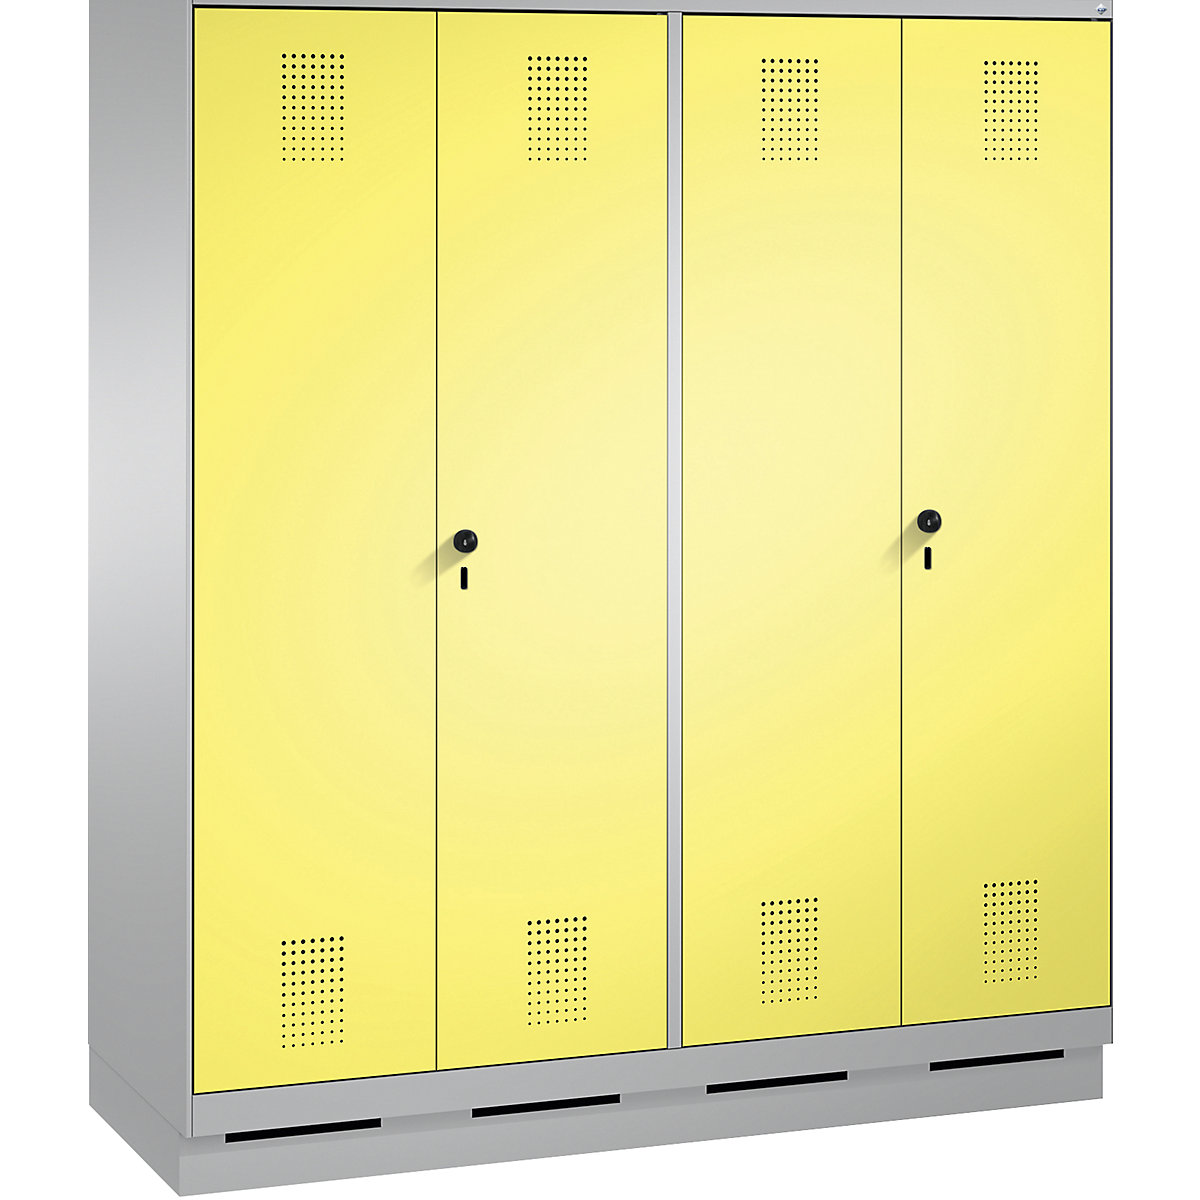 EVOLO öltözőszekrény, egymásra csukódó ajtók – C+P, 4 fülke, fülkeszélesség 400 mm, lábazattal, fehéralumínium / kénsárga-9